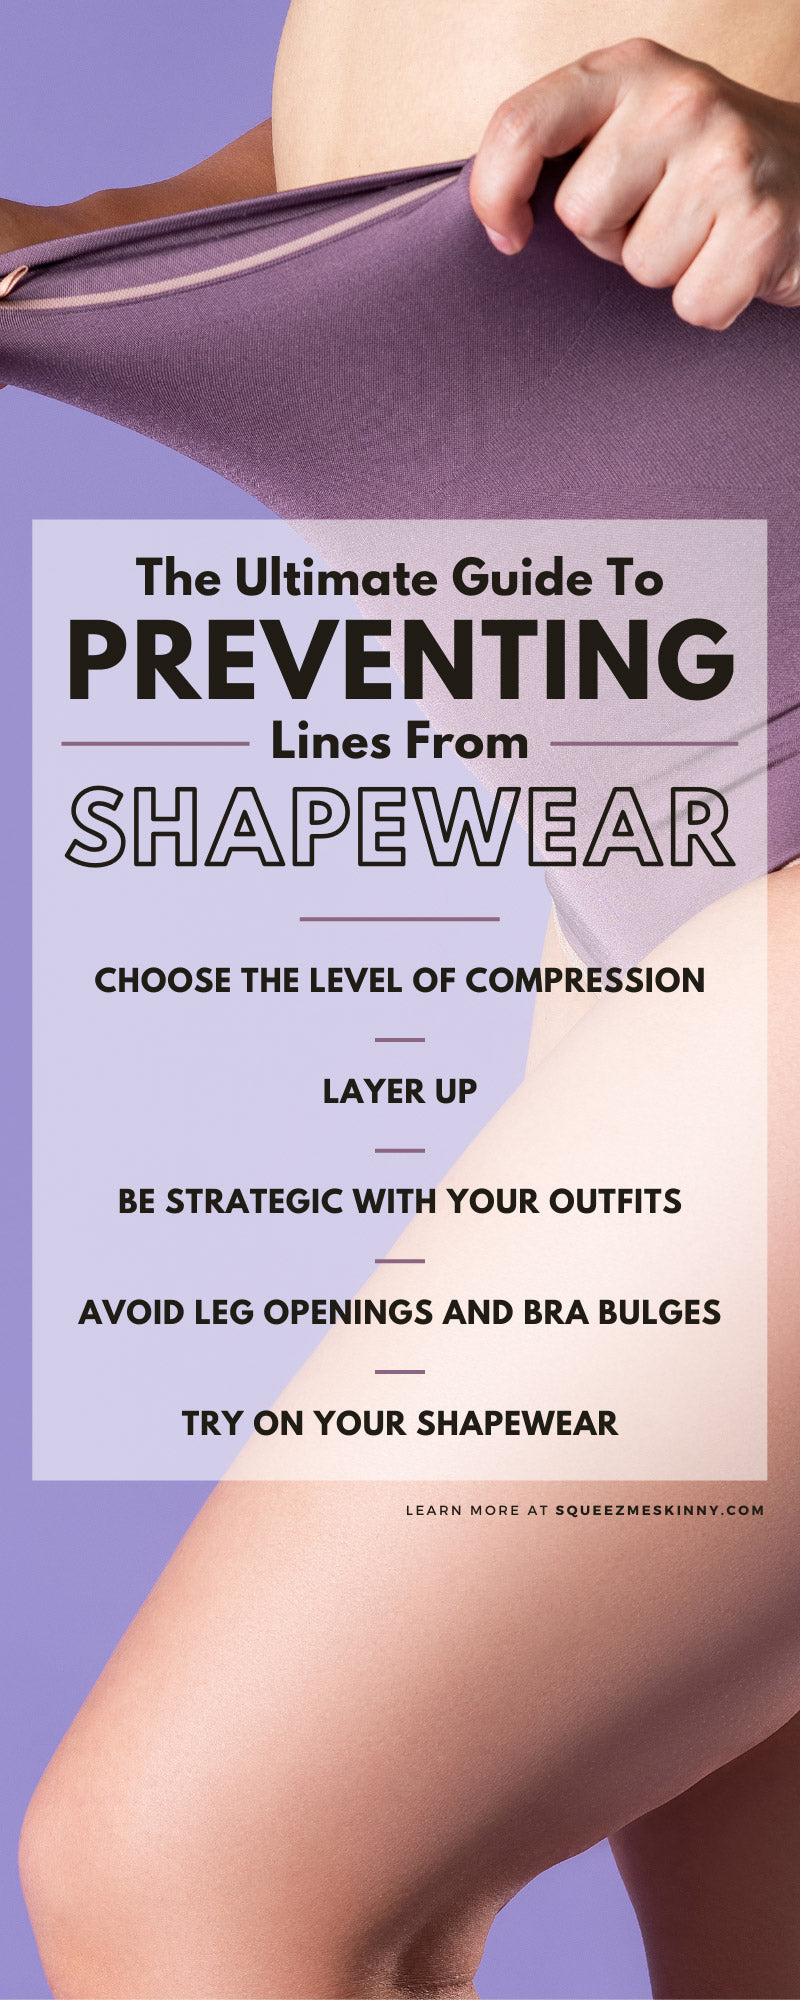 Shapewear Lines